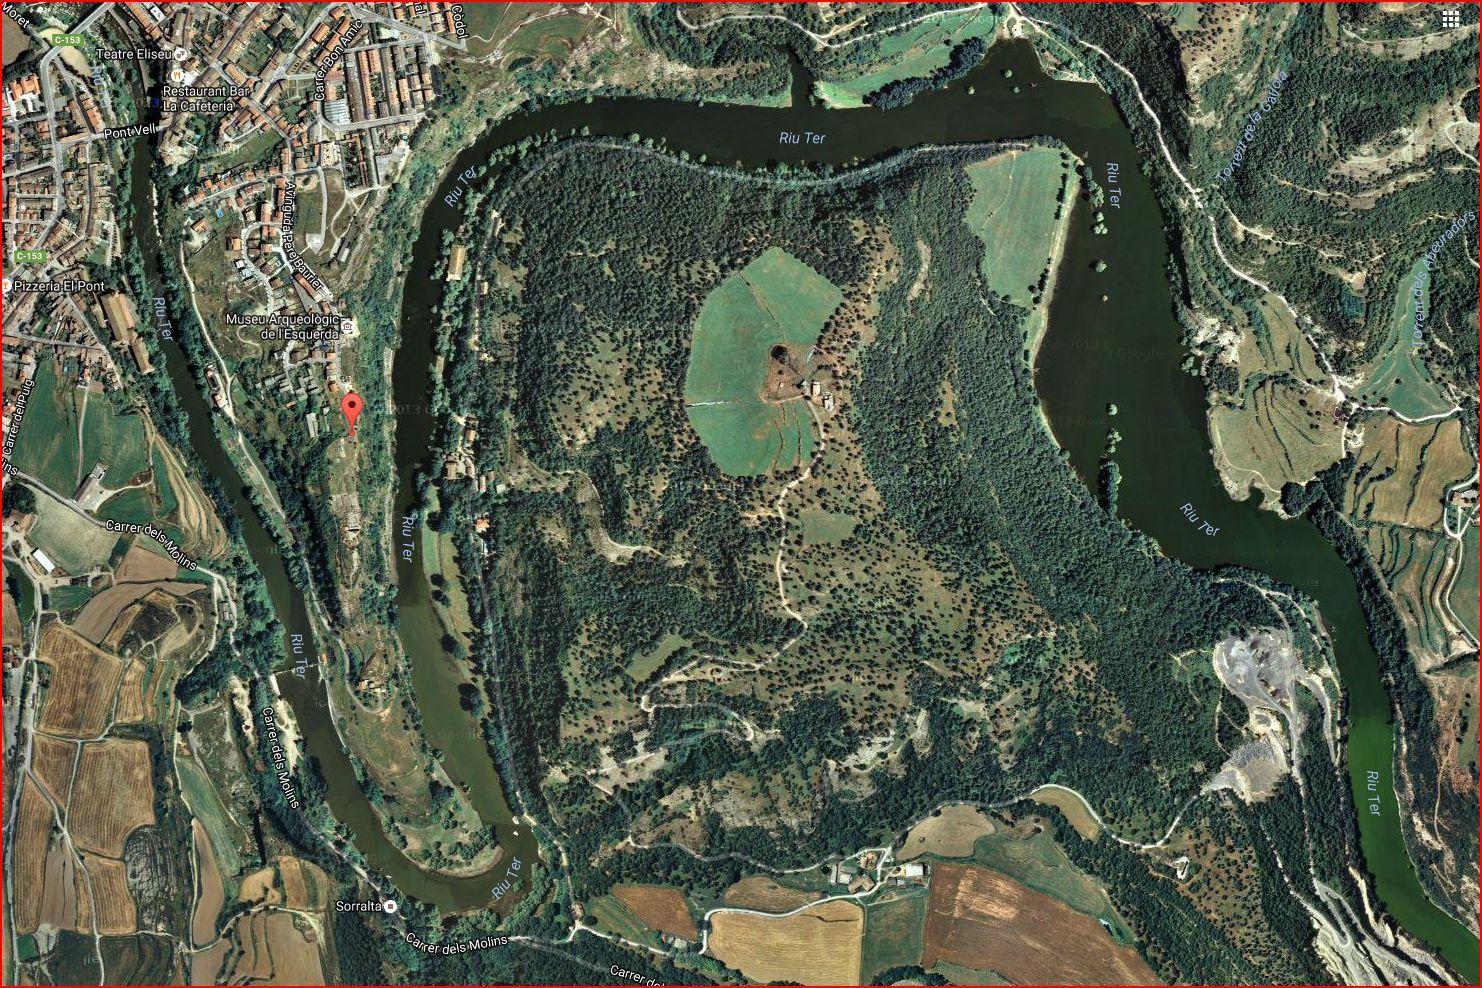 L'Esquerda - Planell de situació on s'aprecia el meandre del riu Ter que envolta parcialment aquest territori - Captura de pantalla de Google Maps